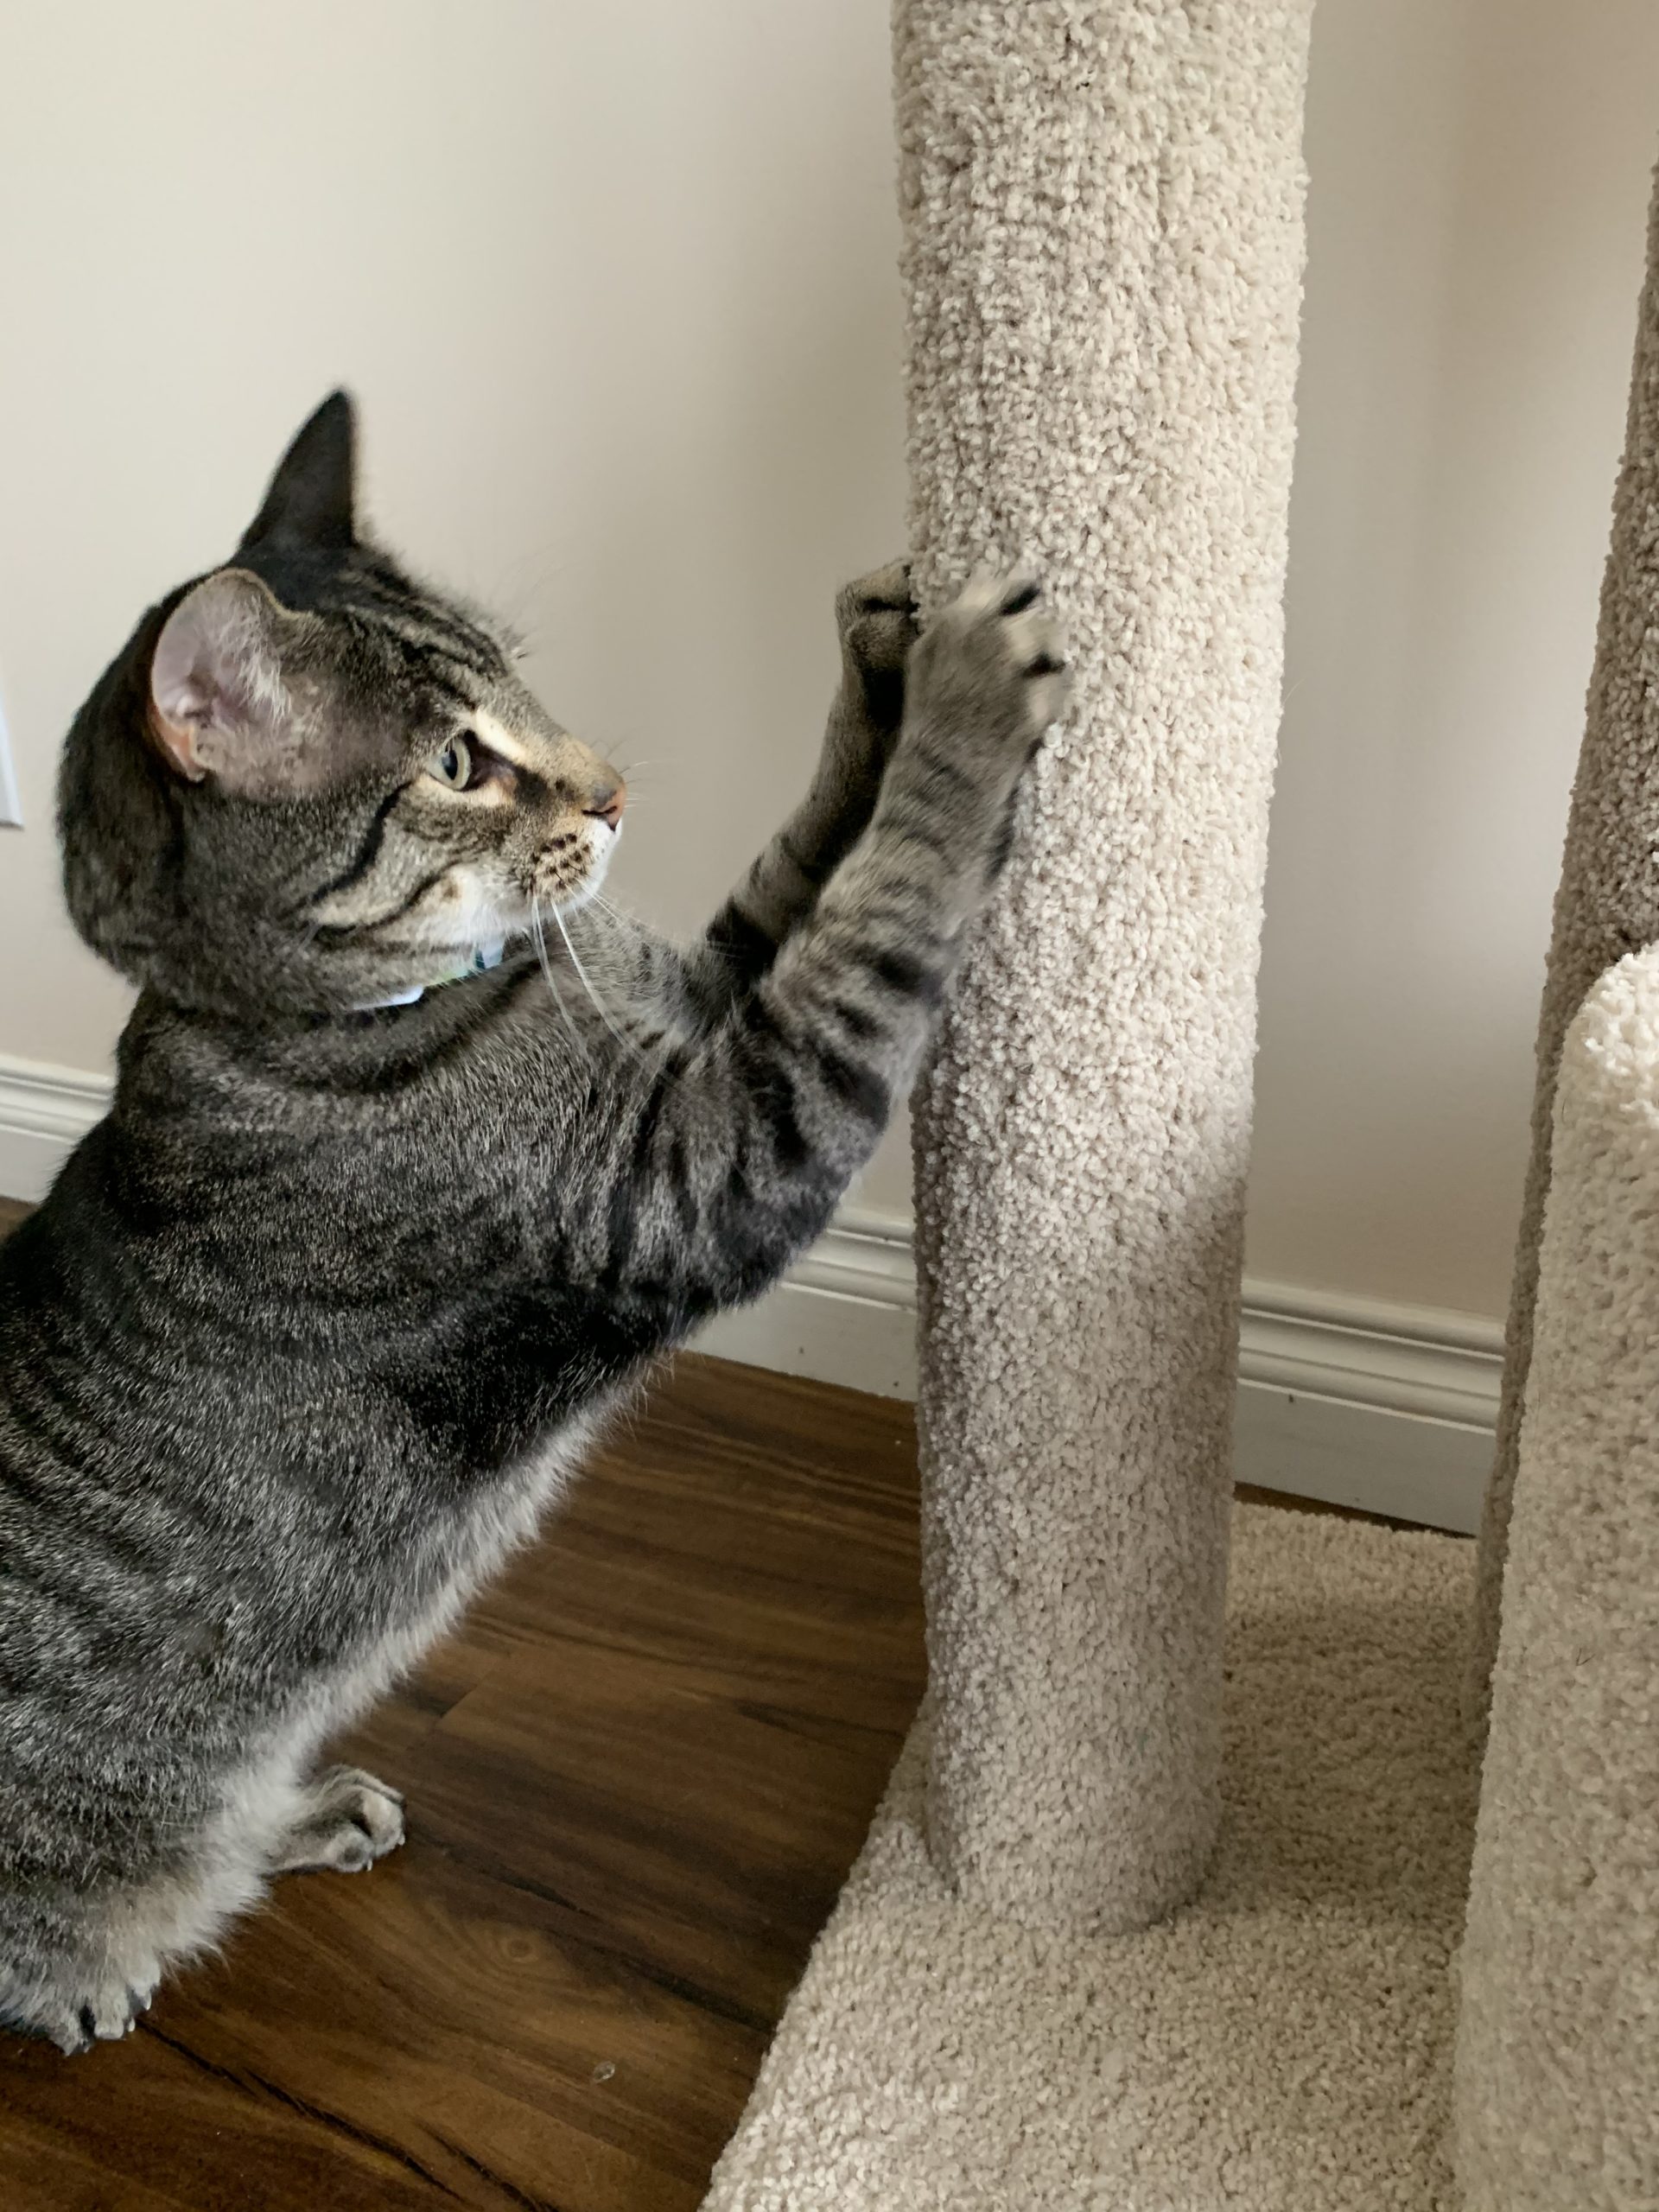 Cat scratching a carpet post